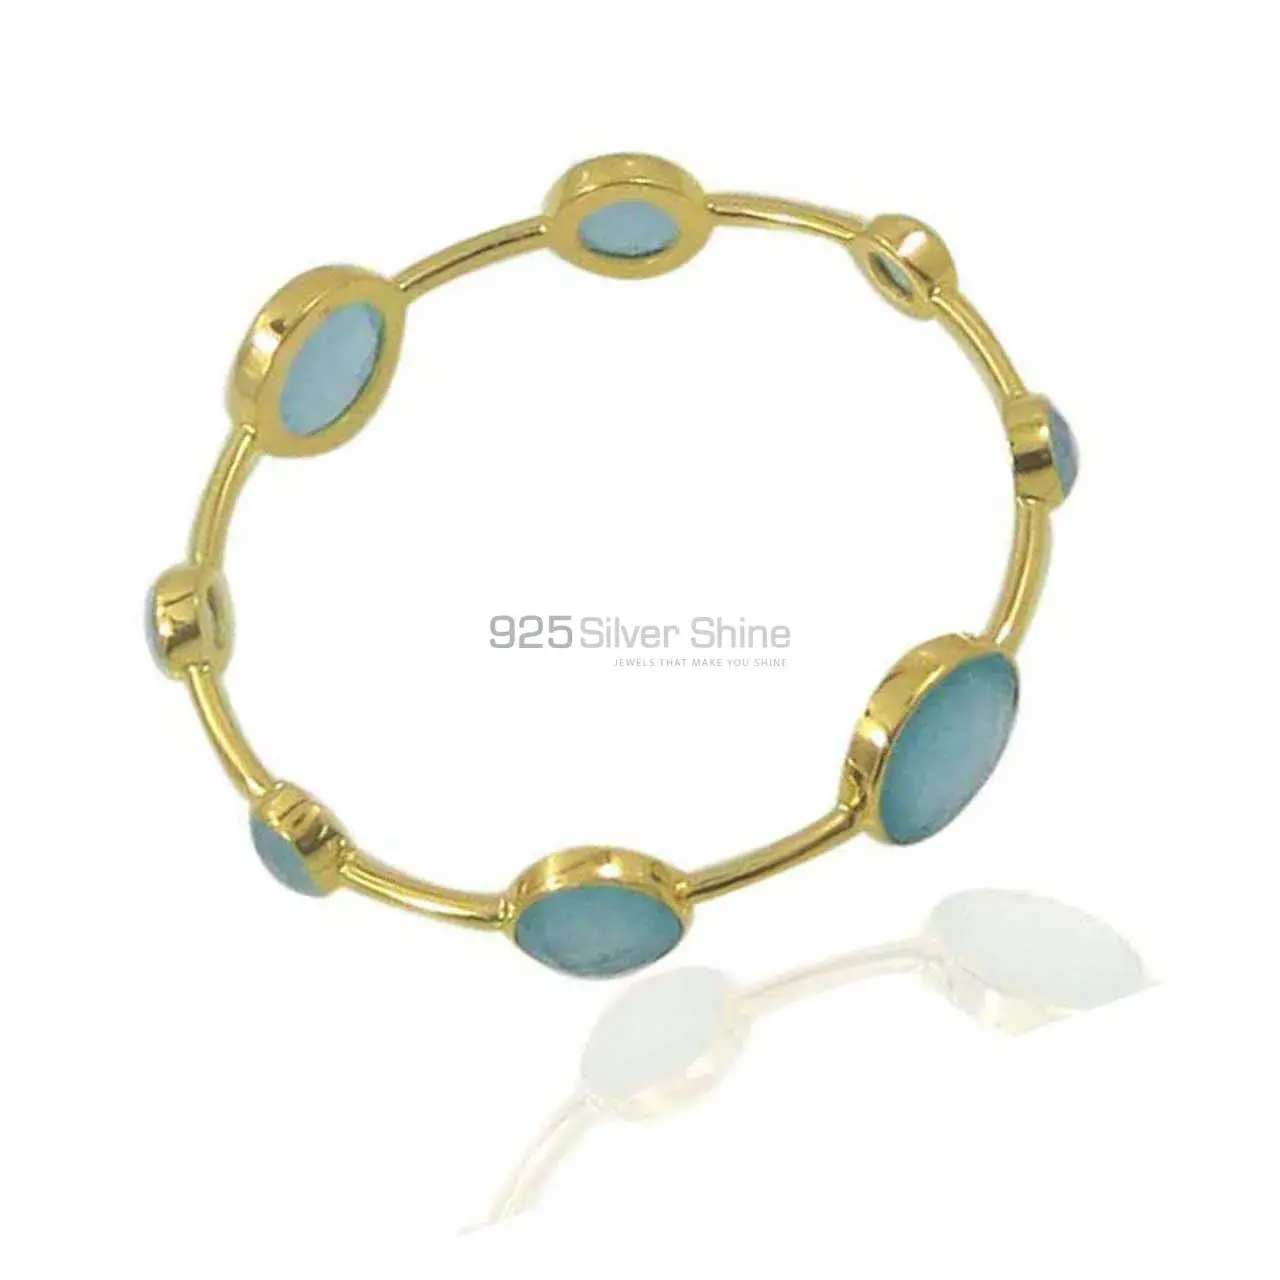 Wholesale Chalcedony Gemstone Bracelet In 925 Sterling Silver Jewelry 925SSB19